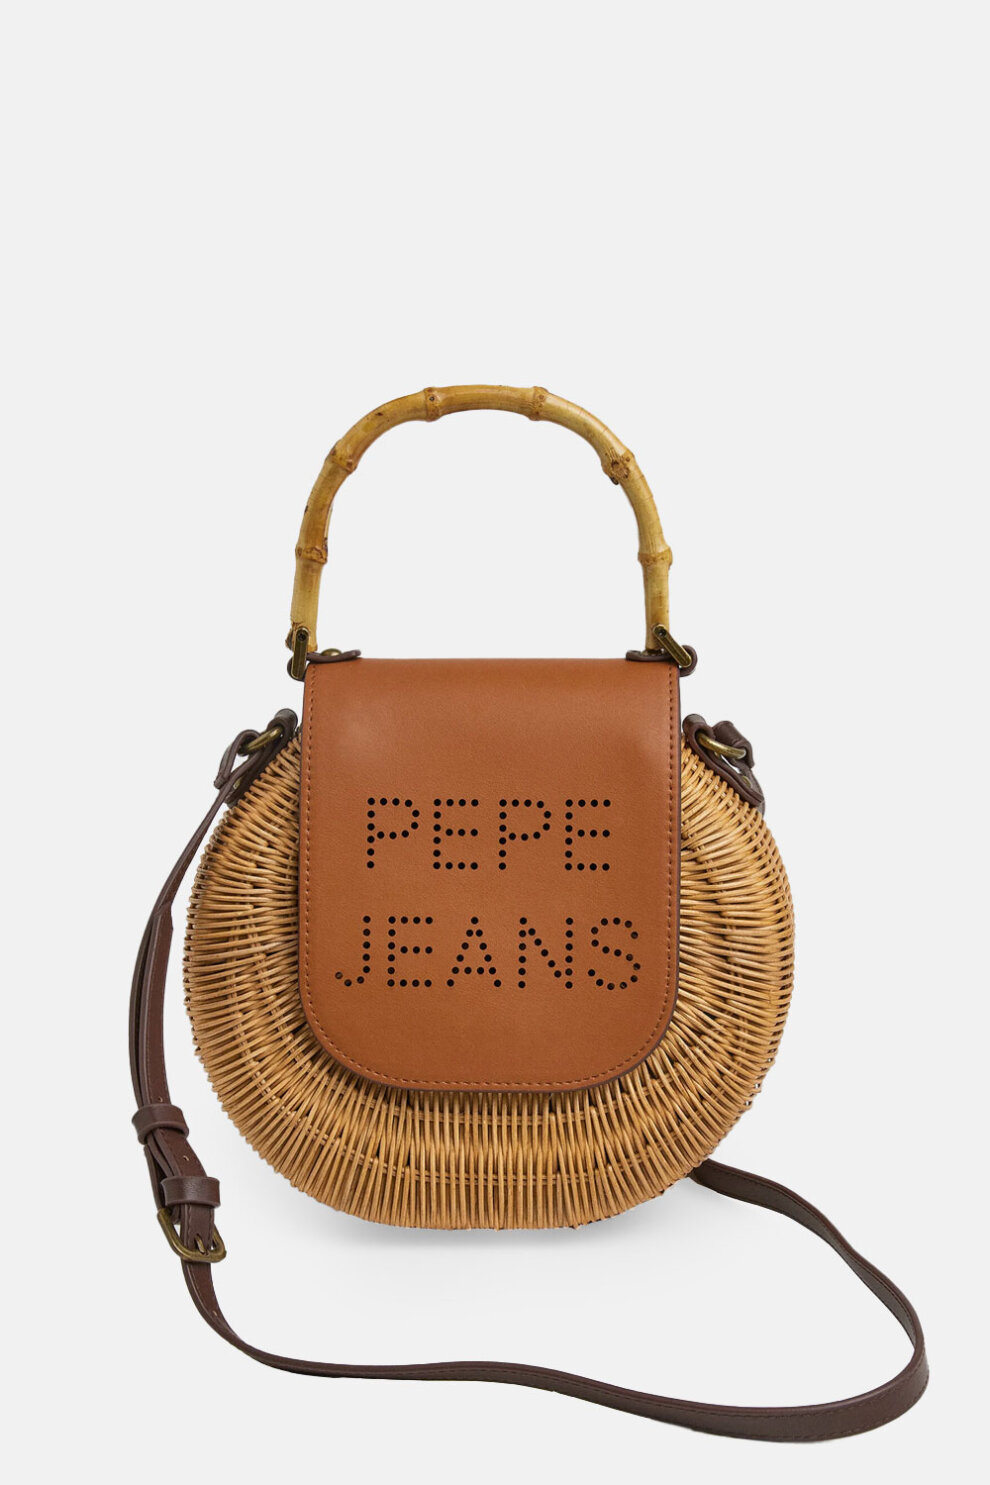 ŽENE - Torbe - Pepe Jeans torba - Smeđa